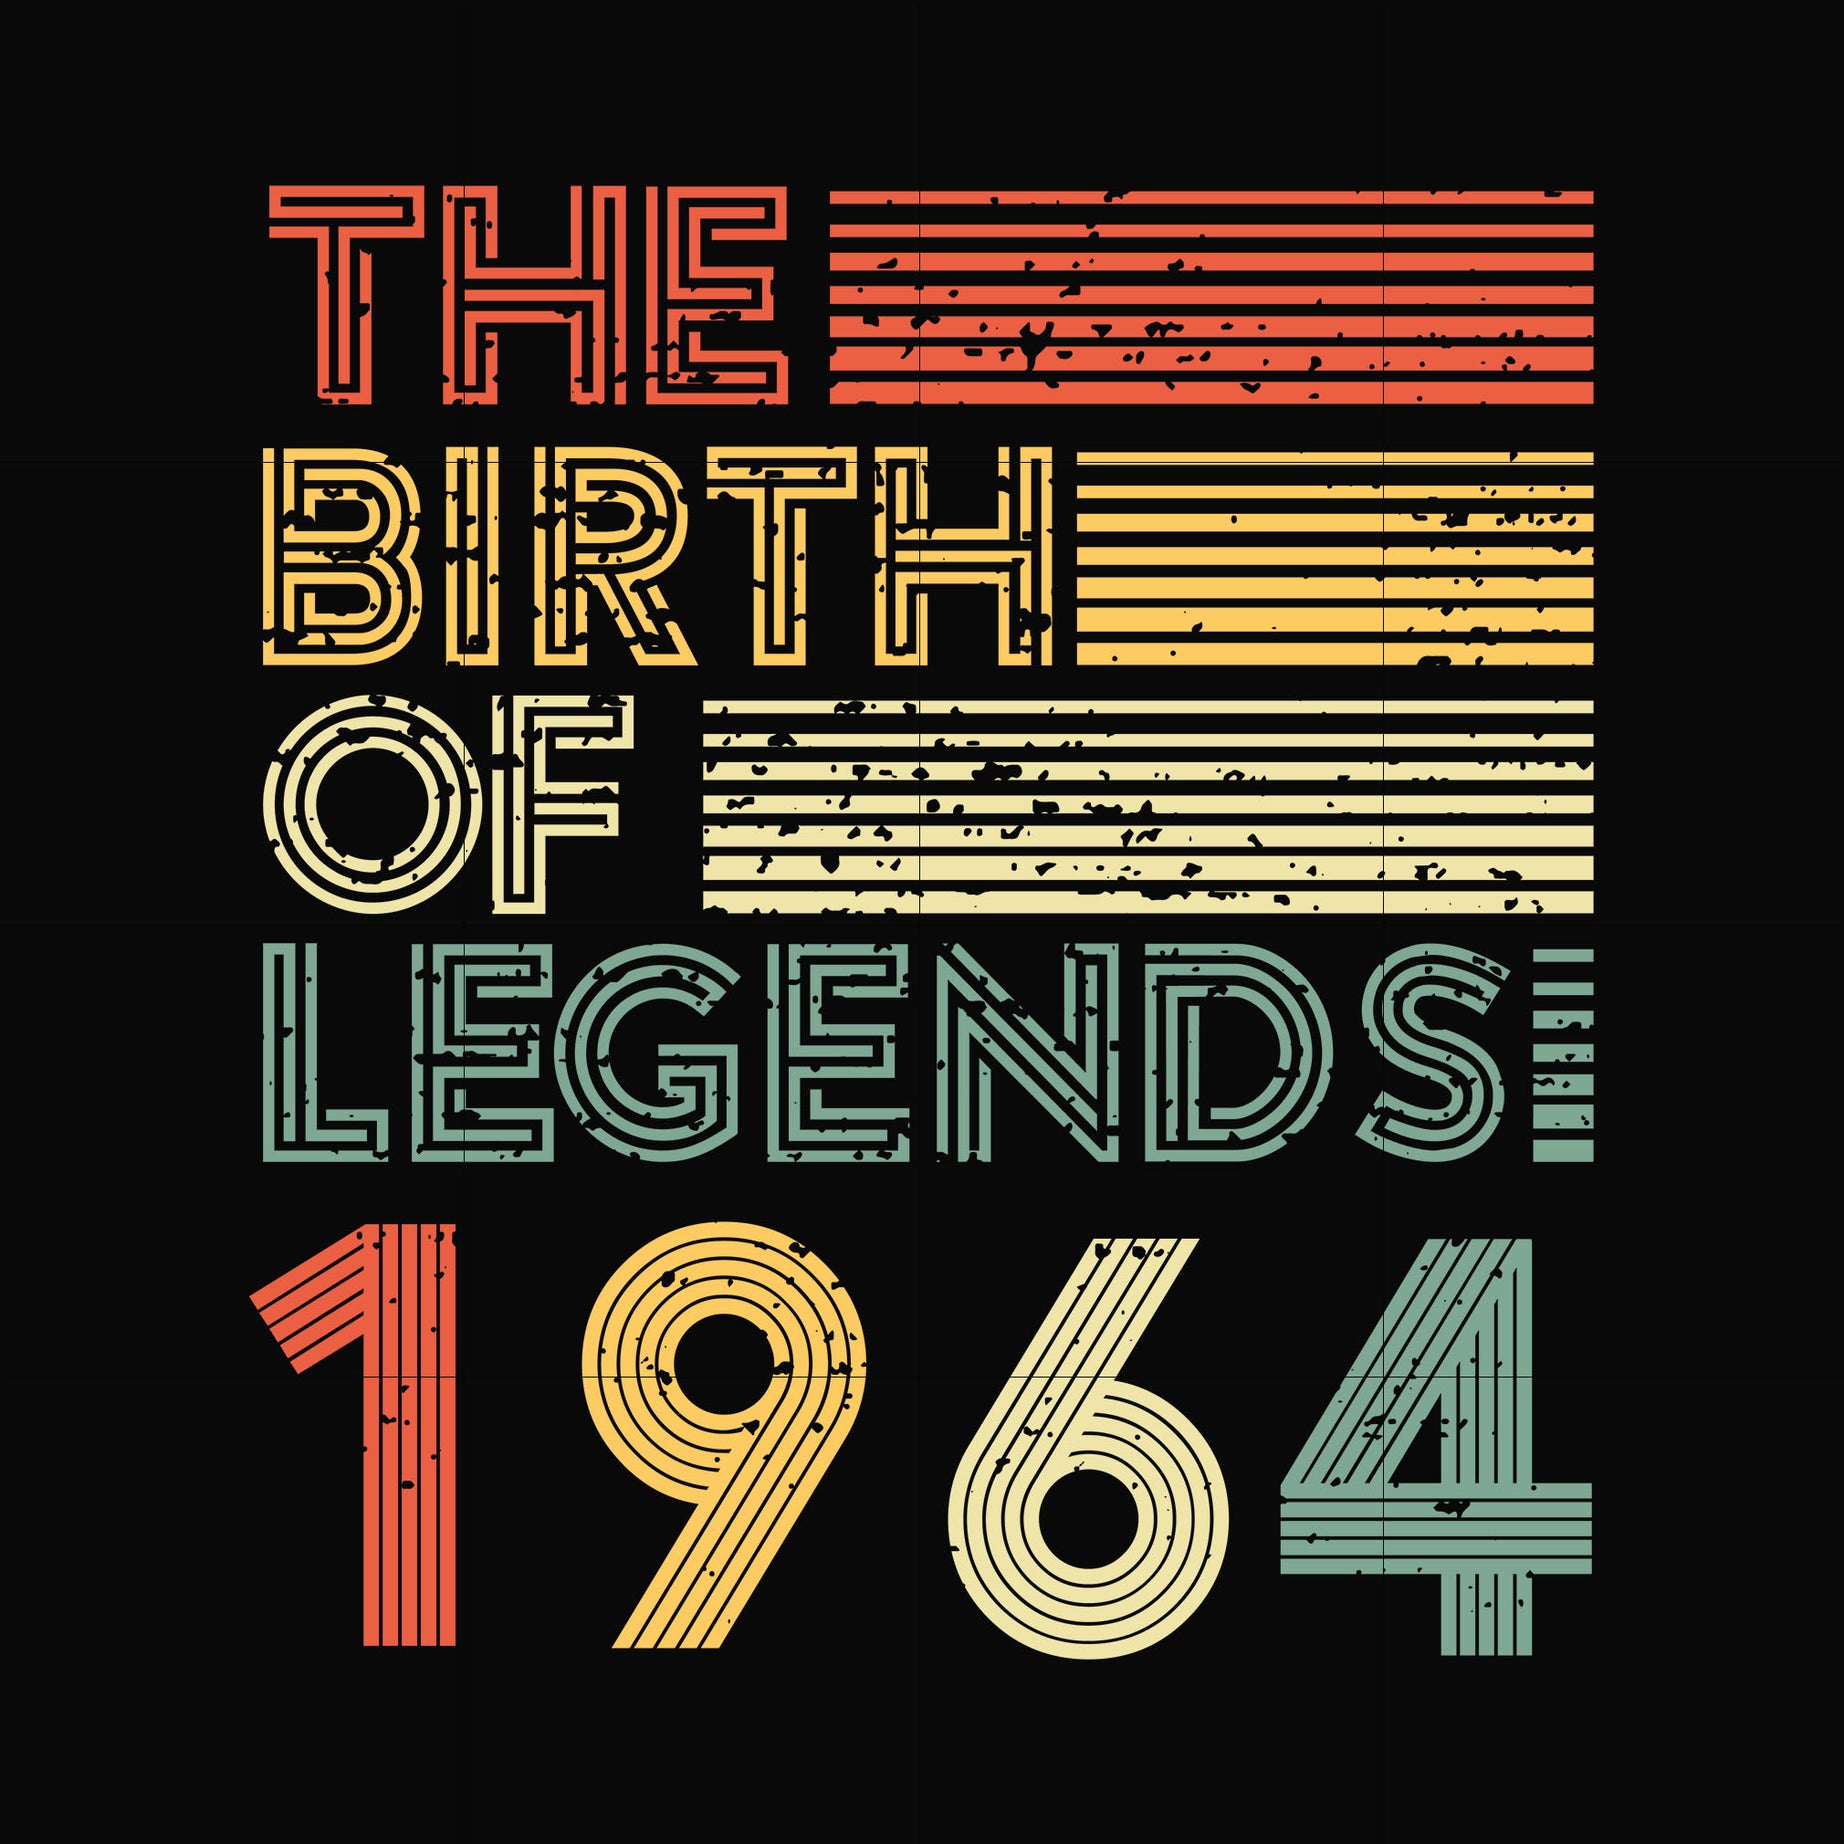 The birth of legends 1964 svg, png, dxf, eps digital file NBD0066